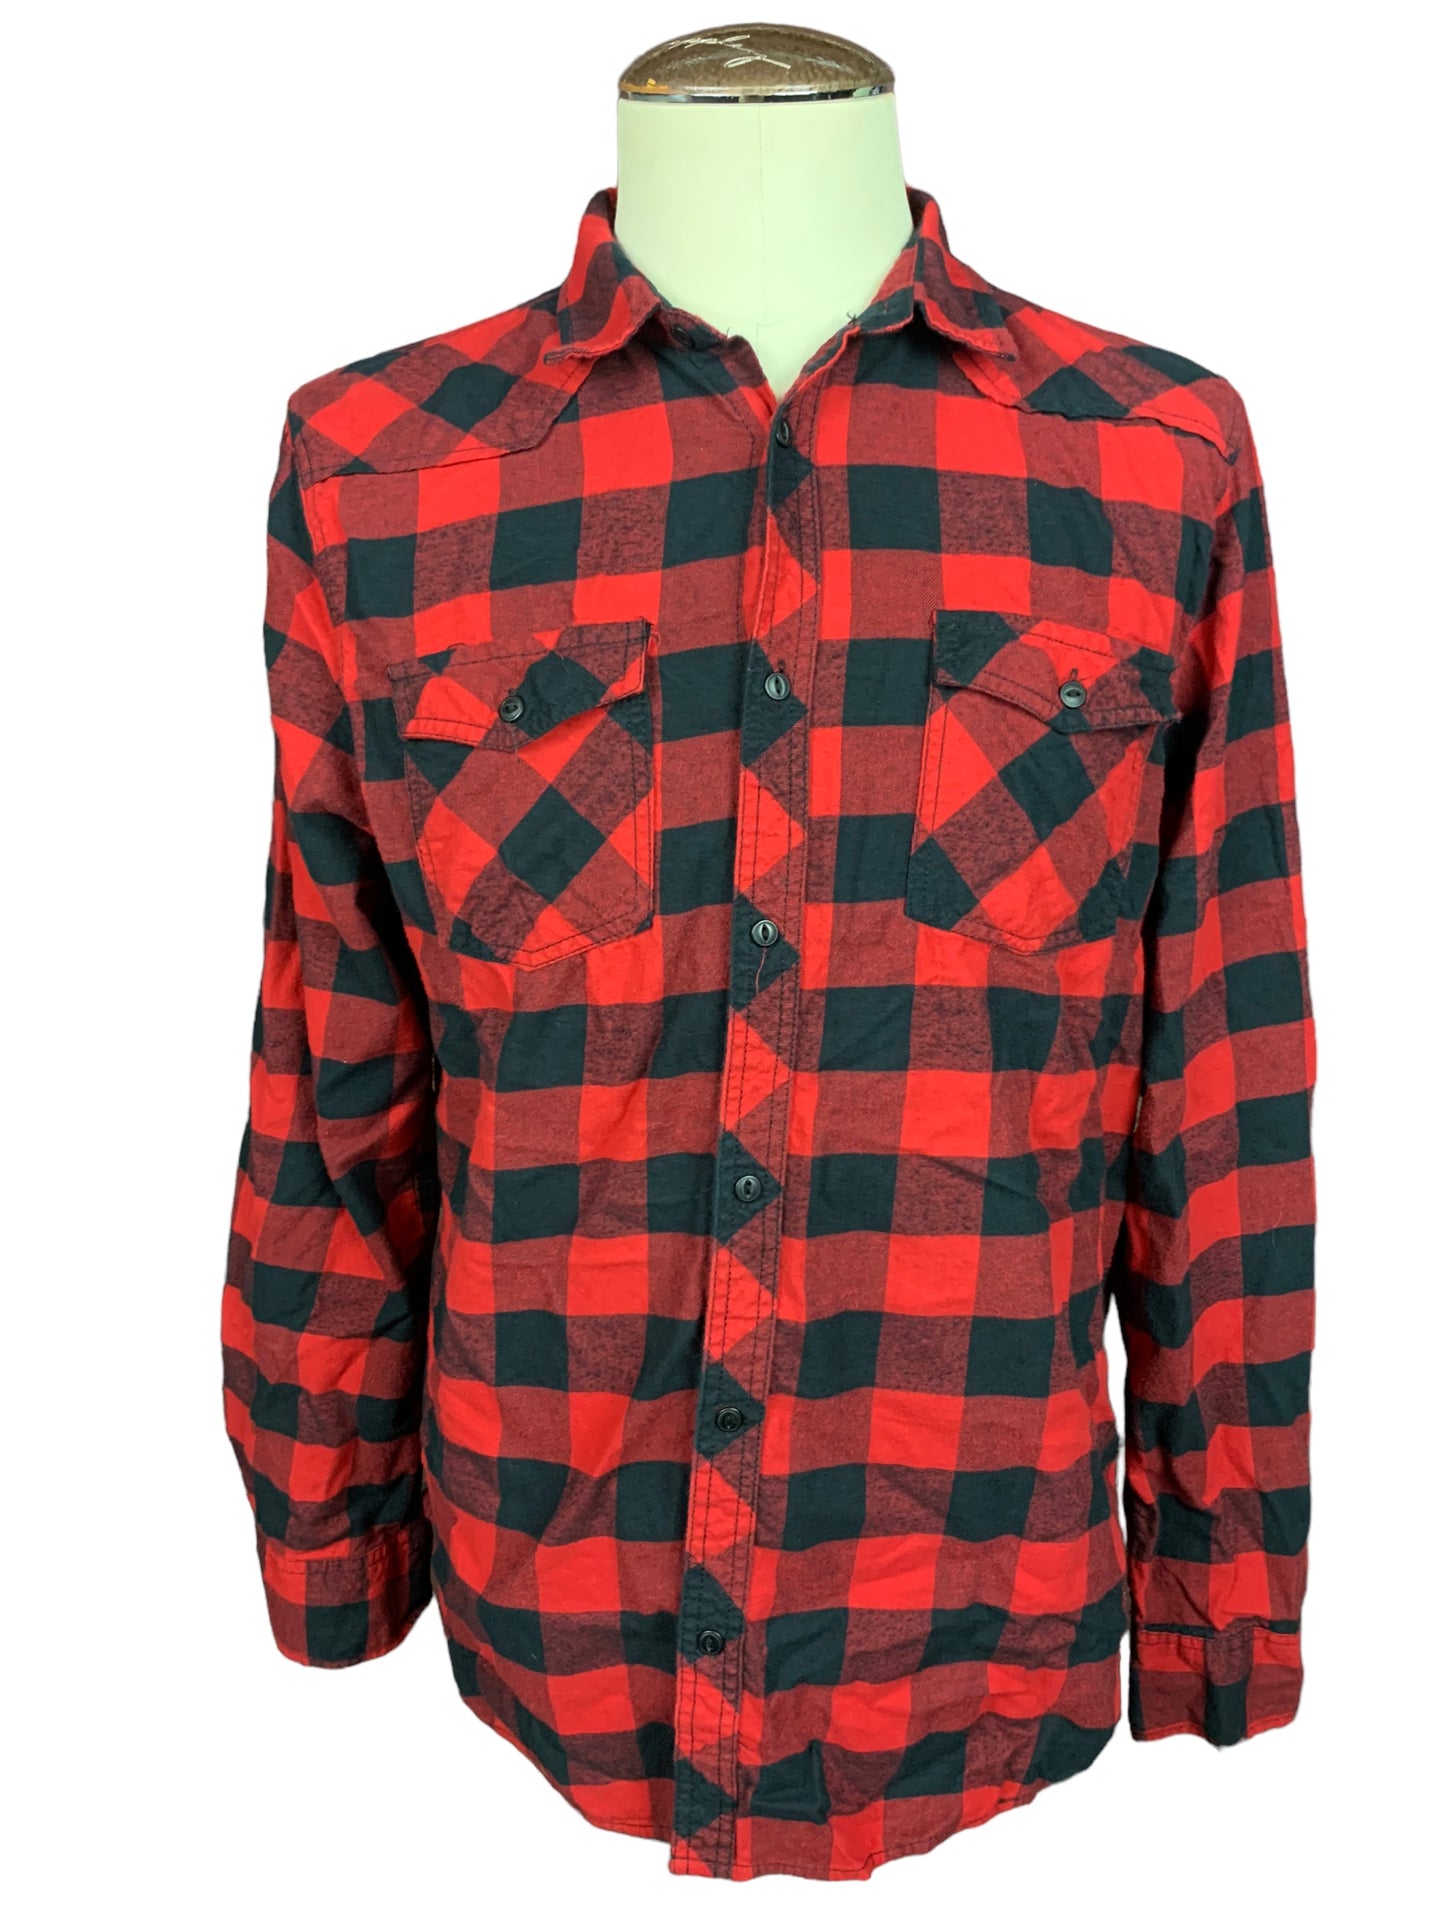 Steven Rhodes Cthulhu Flannel Shirt Custom Rework XL